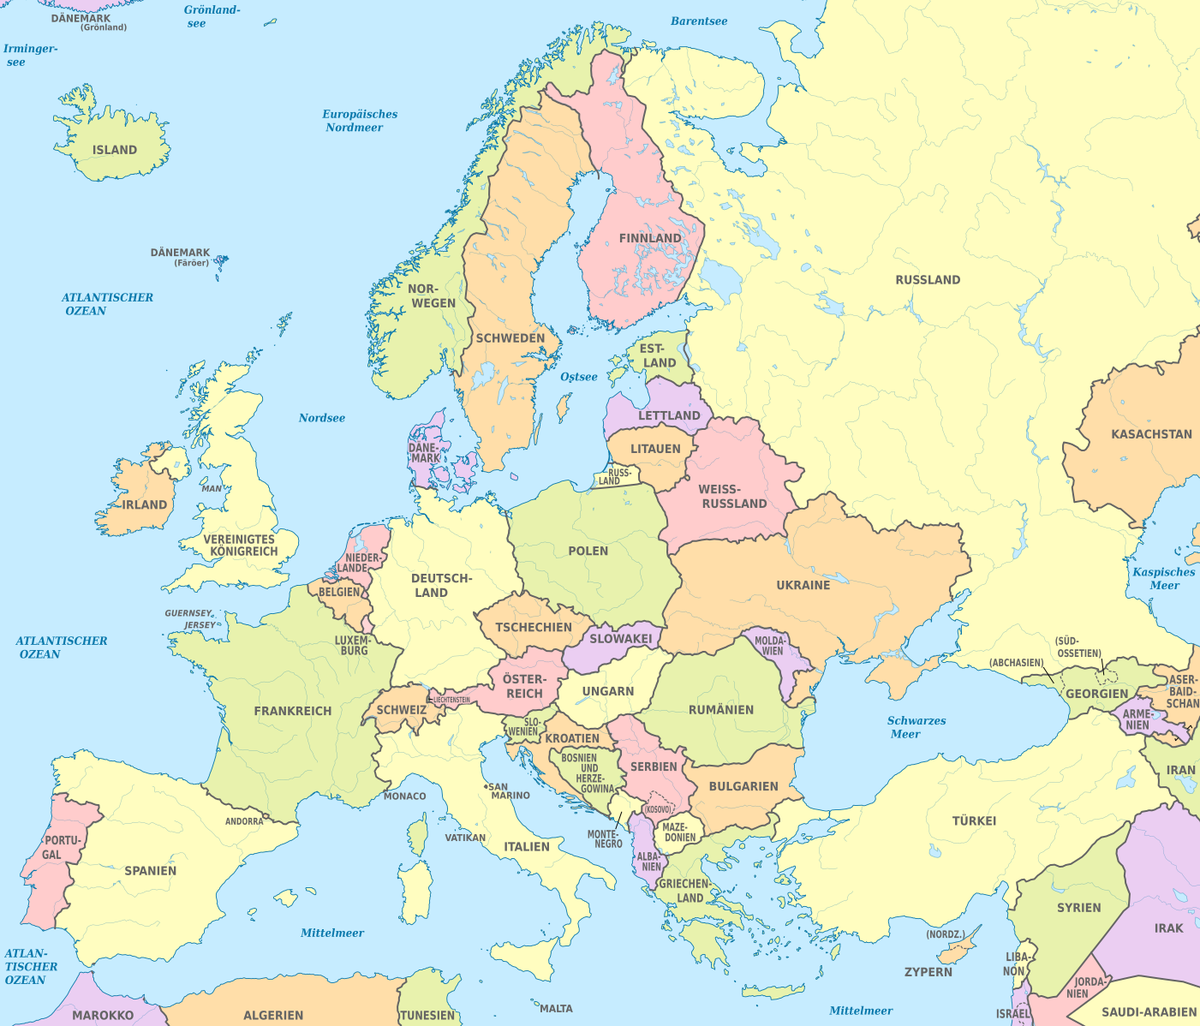 Europa ist ein Kontinent in der nördlichen Hemisphäre, die sich westlich vo...